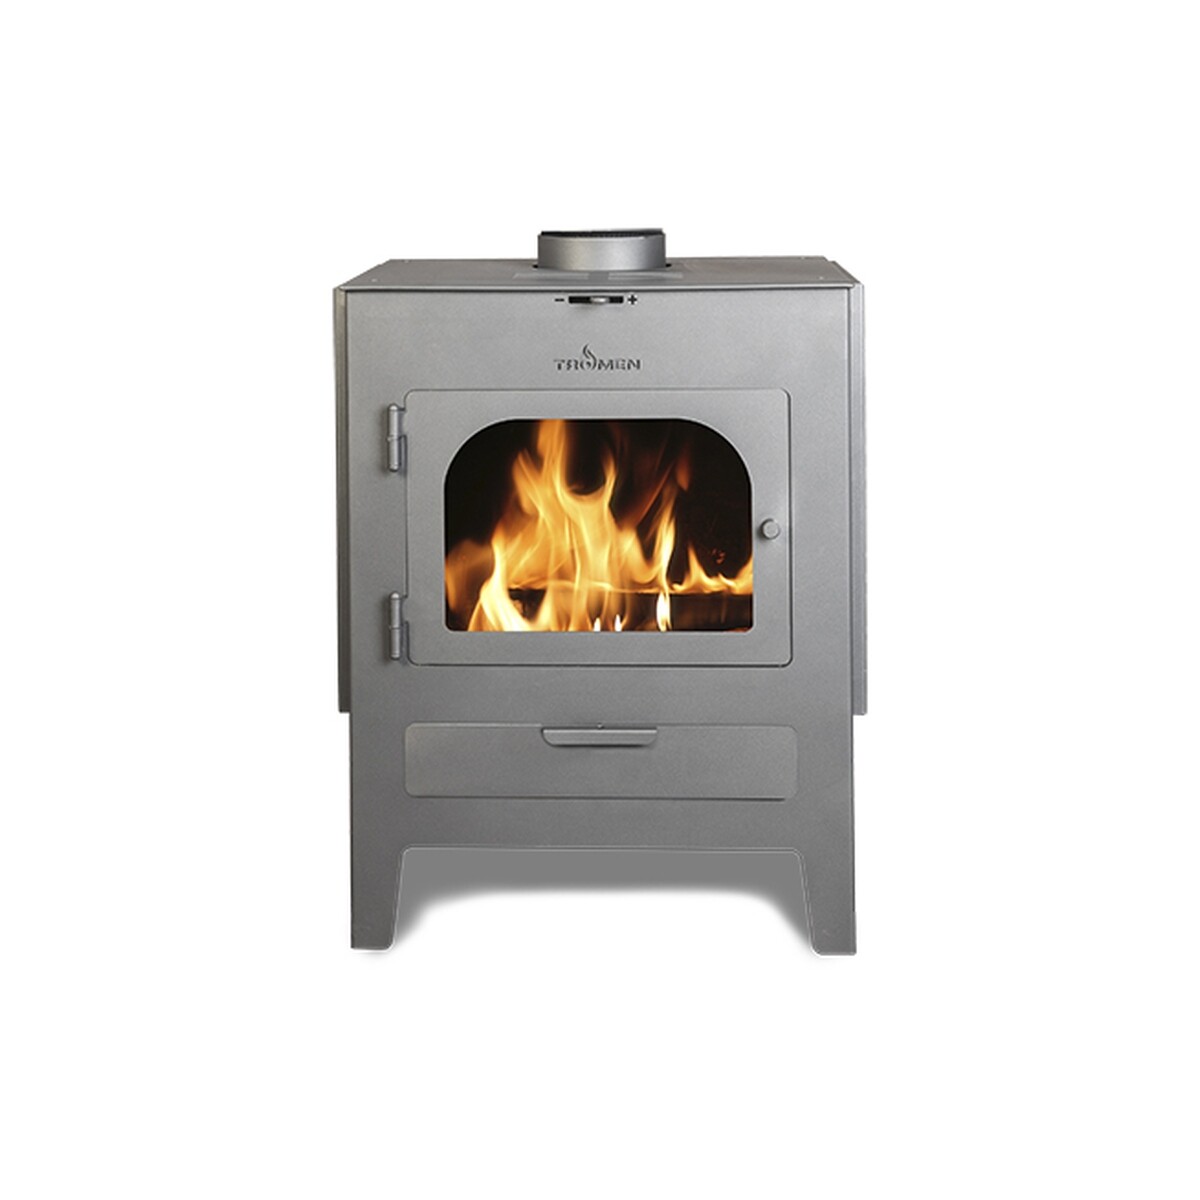 Estufa calefactor a leña TROMEN Peheun P 13000 